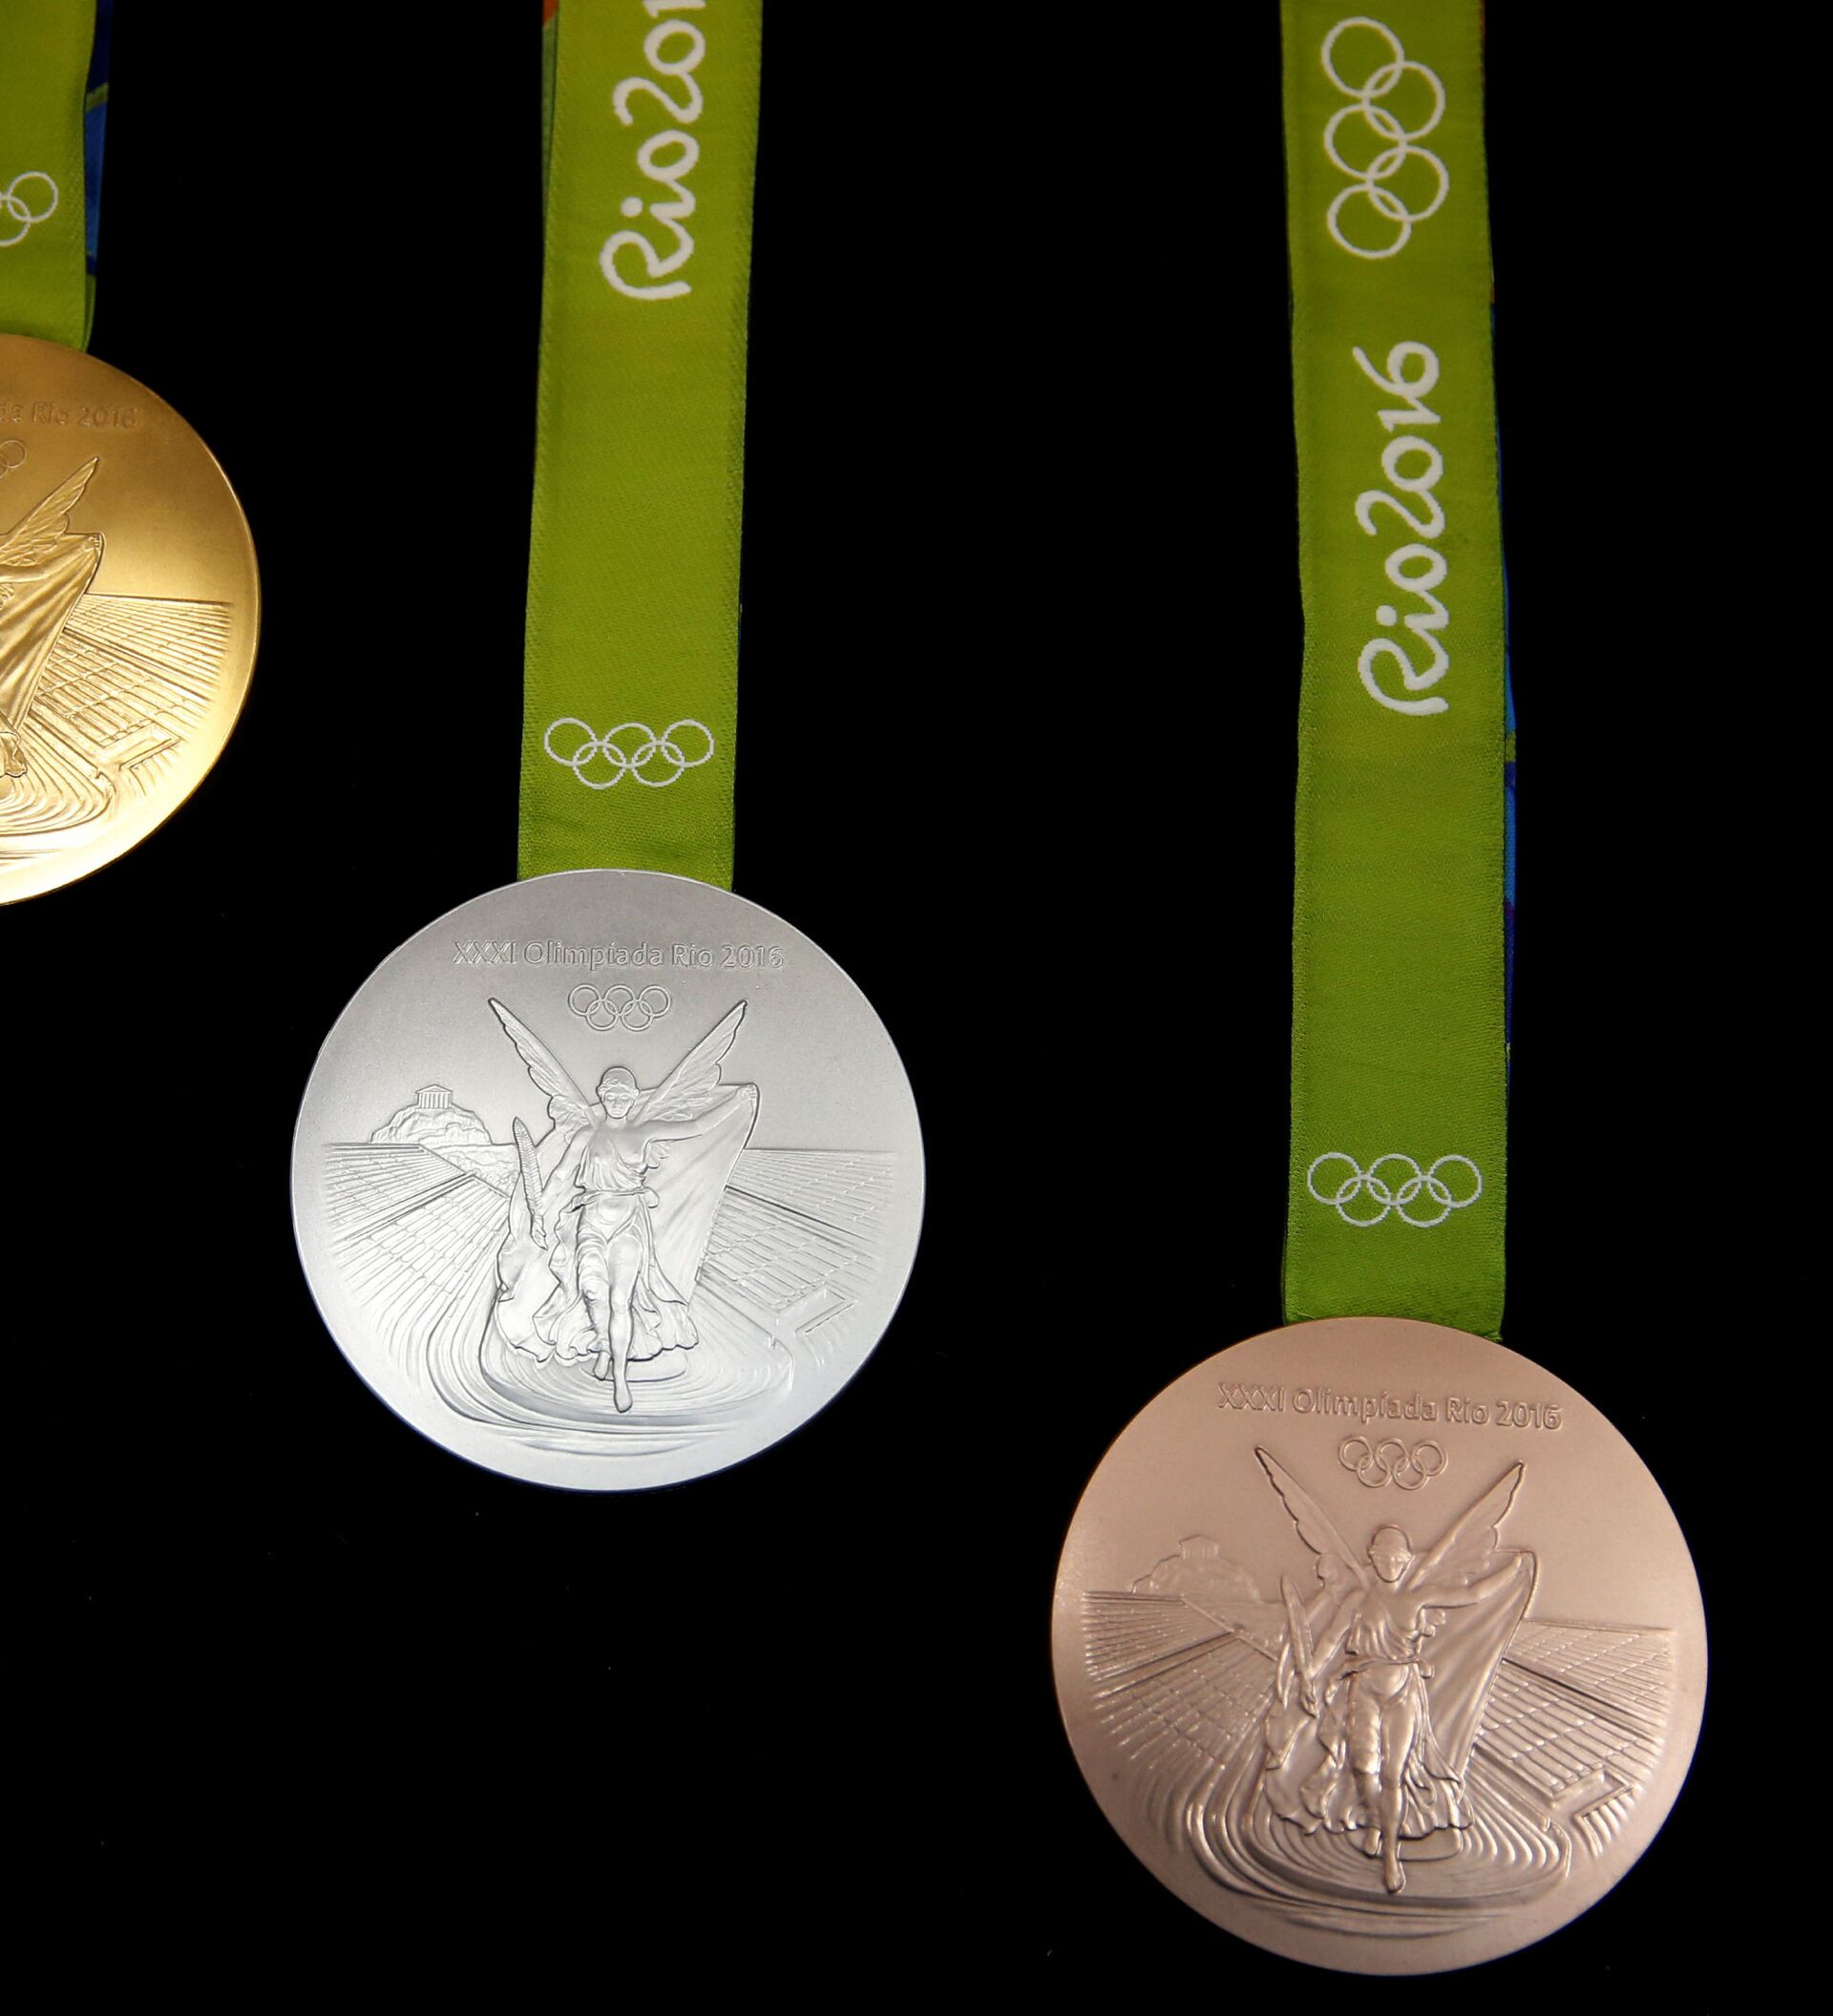 Олимпийские медали 2012 года